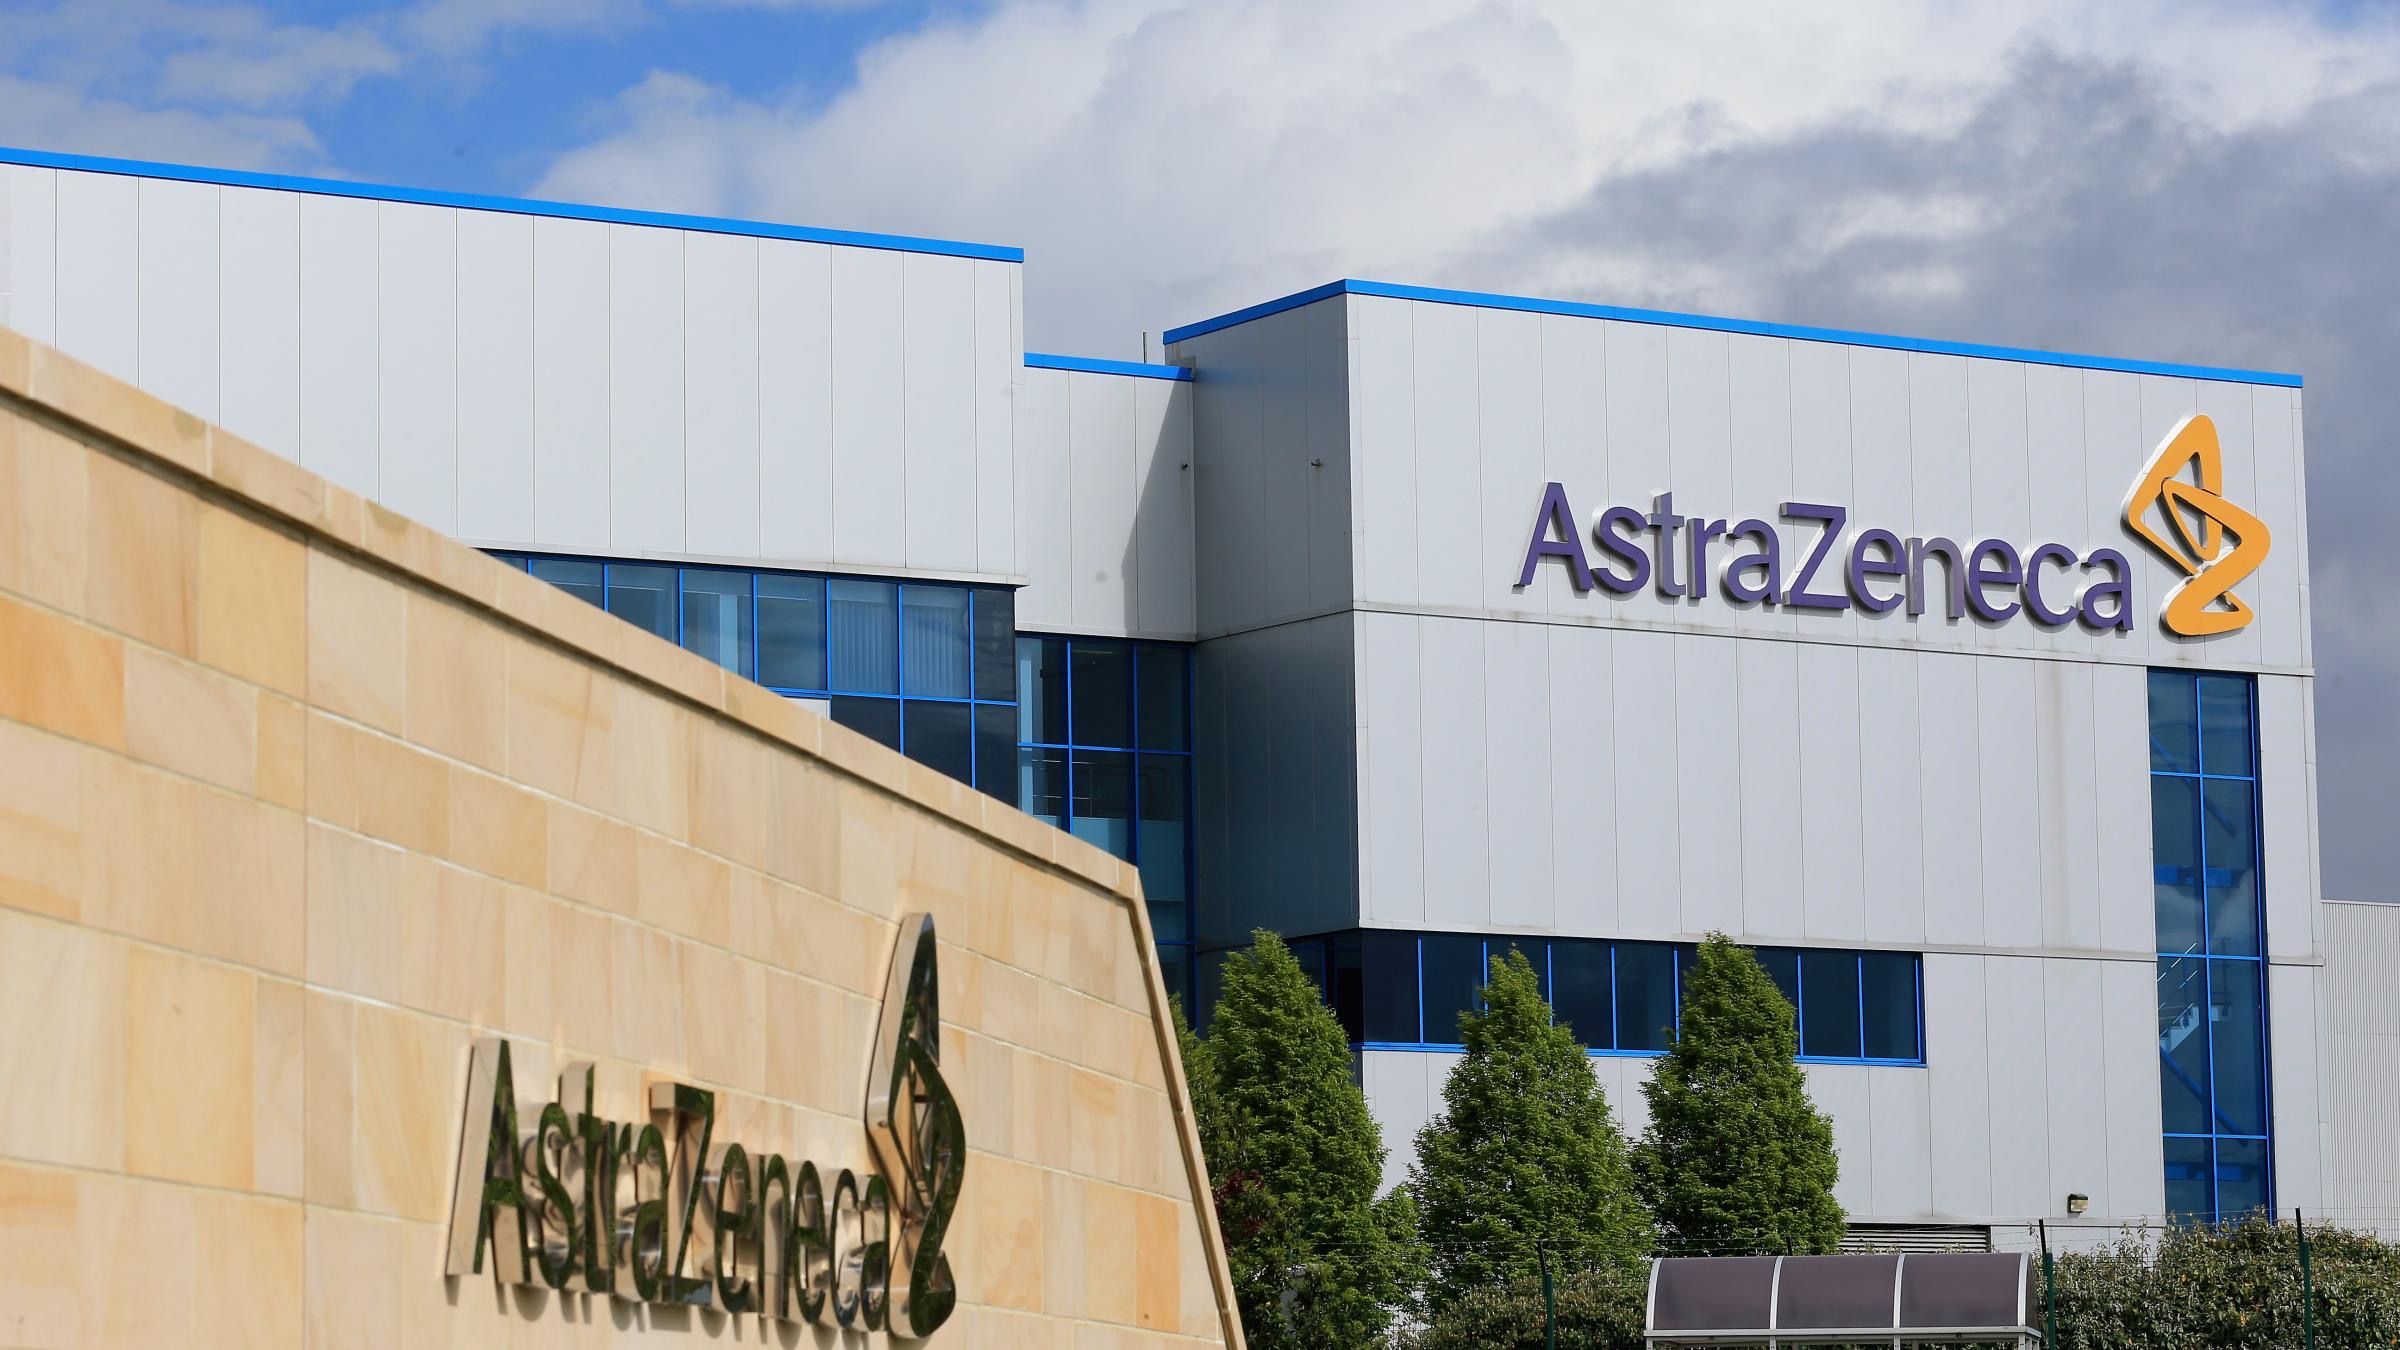 Կանադան դադարեցրել է AstraZeneca պատվաստանյութի գործածումը 55 տարեկանից ցածրների համար